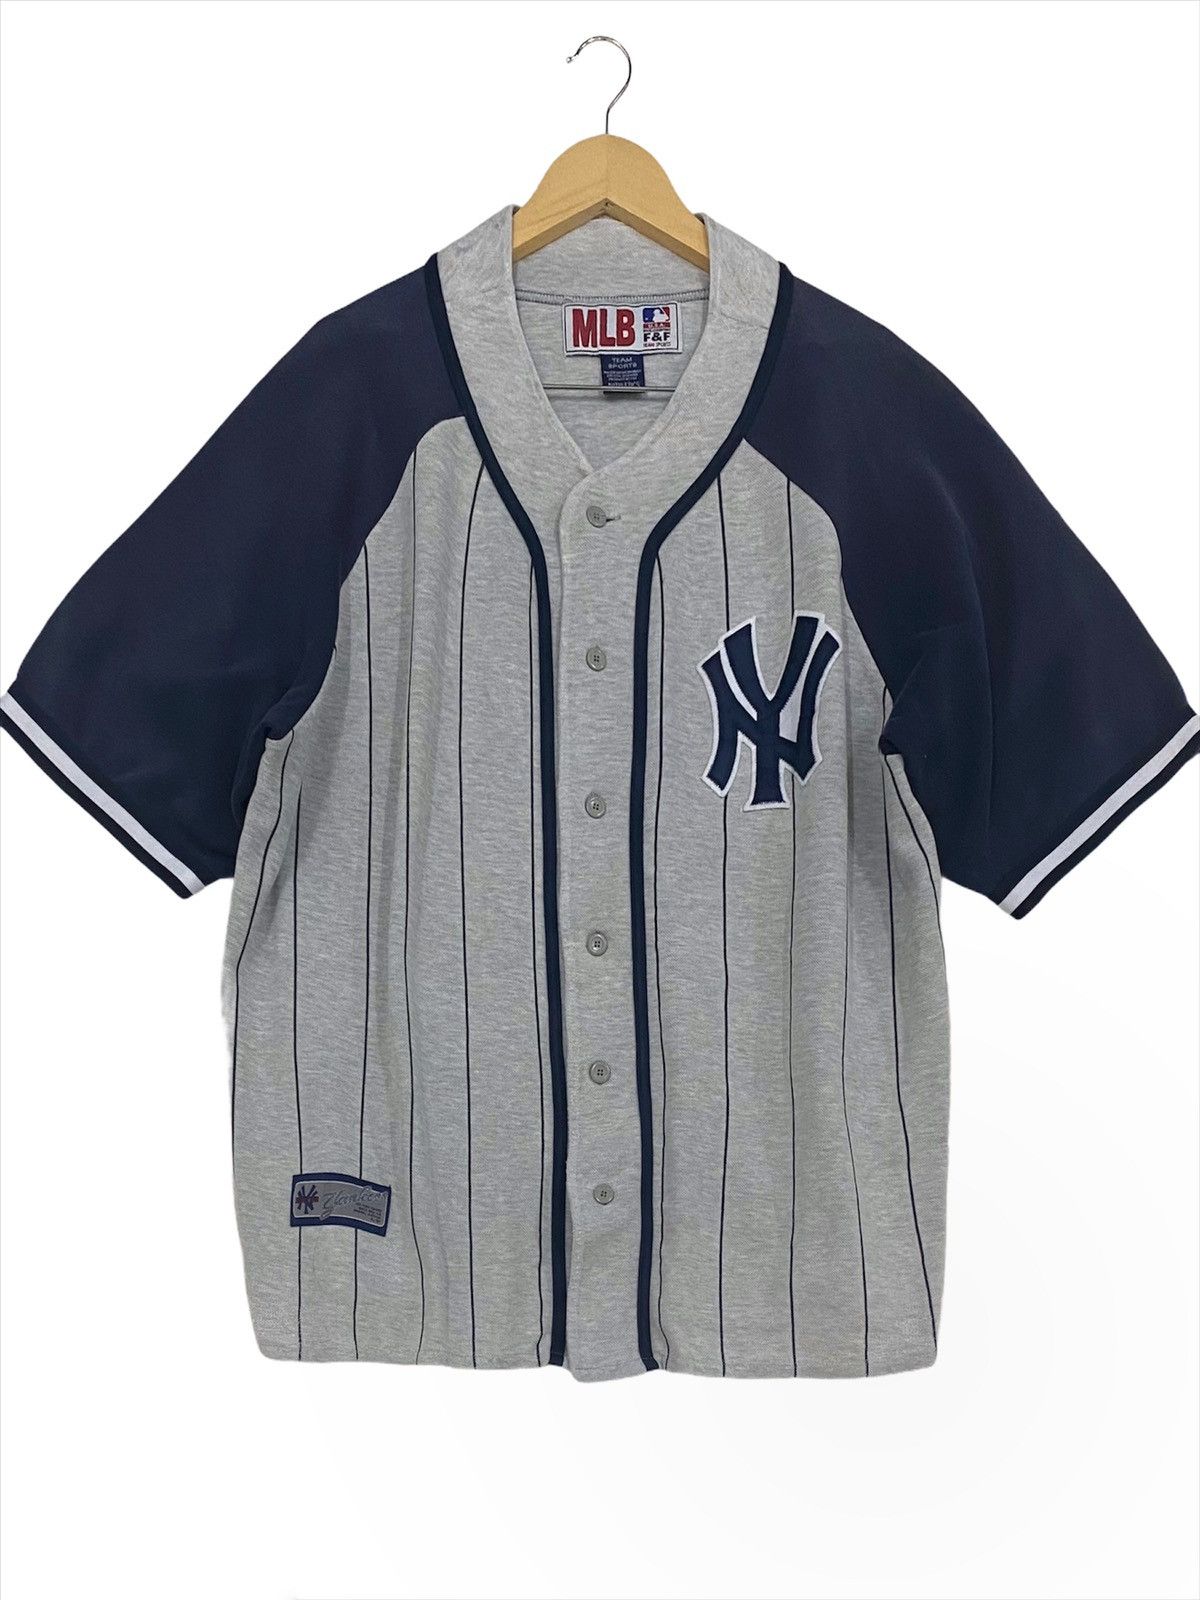 MAJESTIC Genuine Merchandise MLB New York Yankees Jersey Gray Men Medium  LikeNew